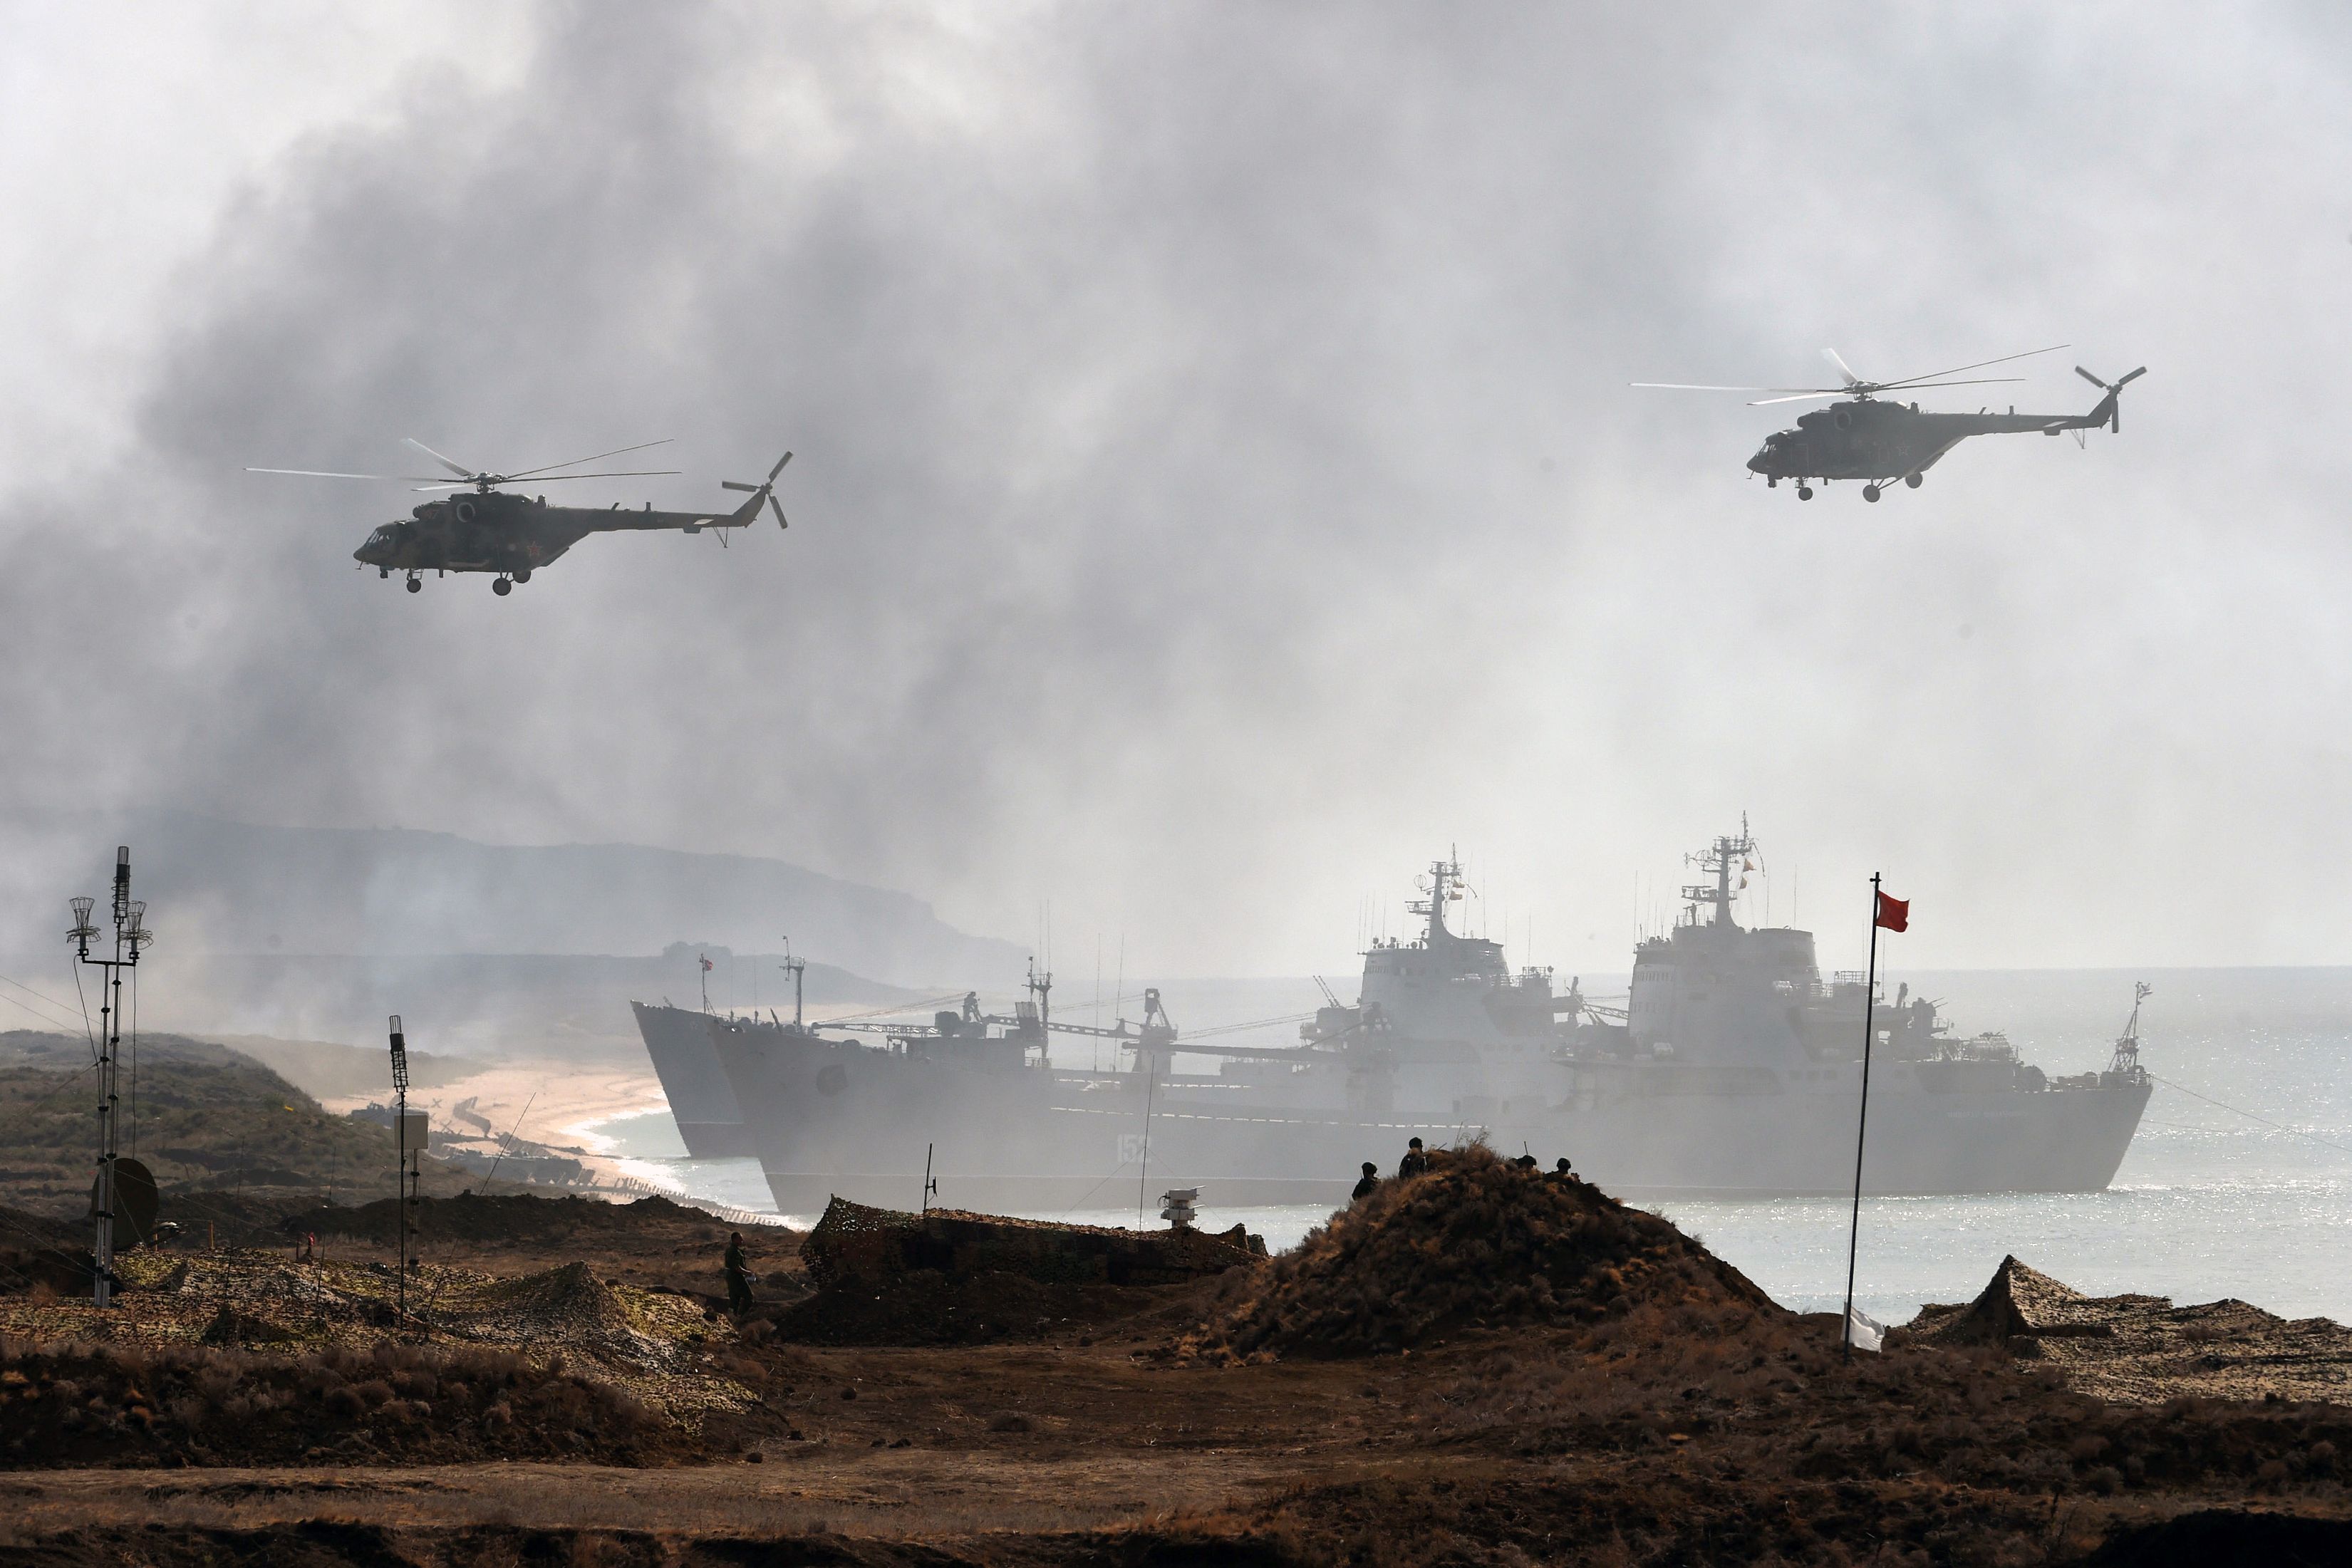 وكالة أنباء: إقالة قائد أسطول البحر الأسود الروسي بعد انتكاسات في شبه جزيرة القرم